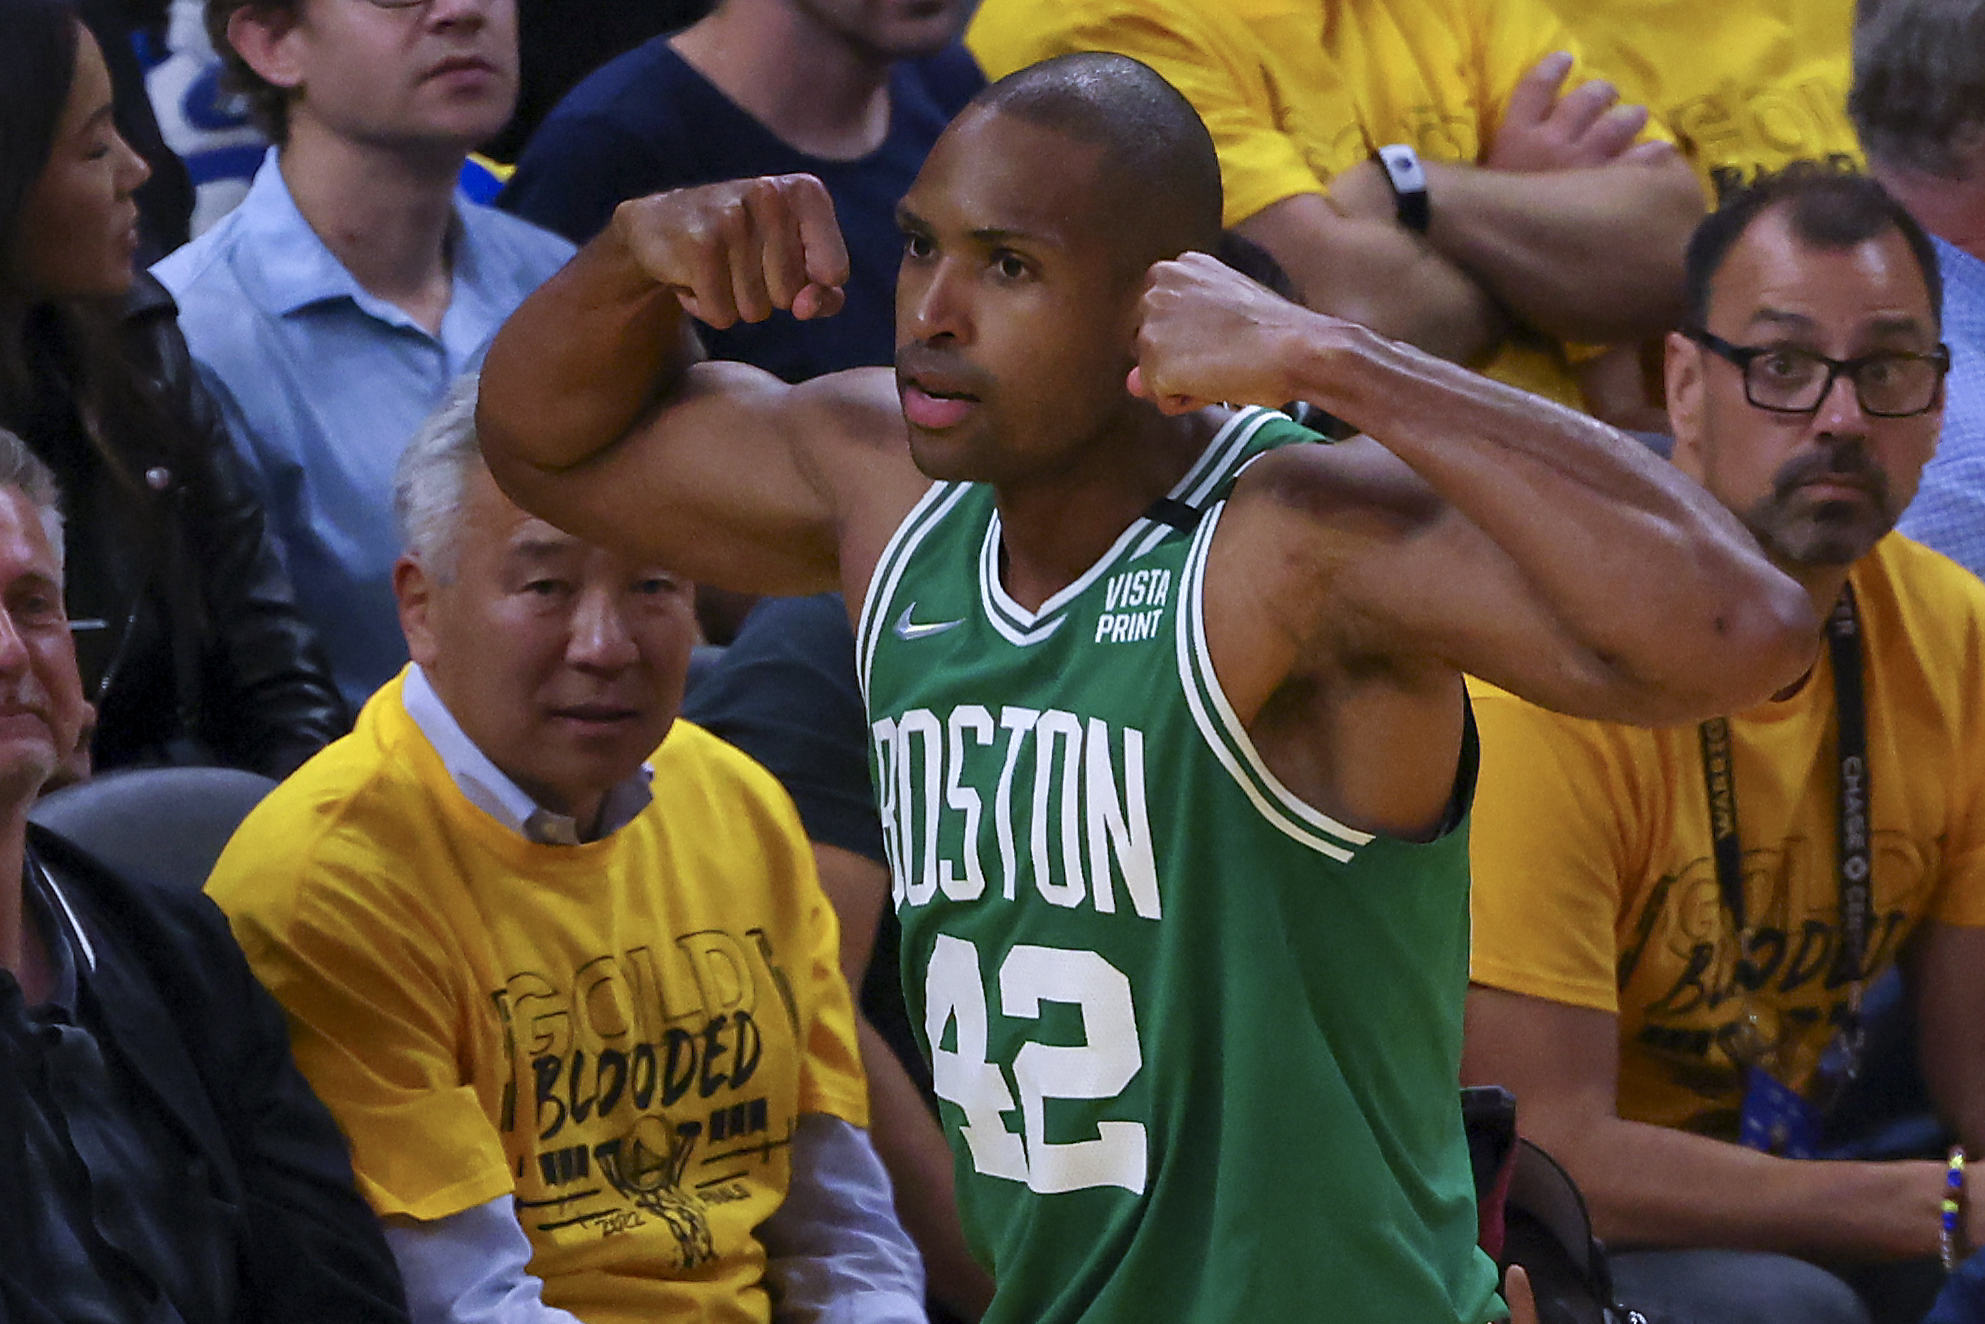 Boston Celtics vs Golden State Warriors - Full Game 1 Highlights, June 2,  2022